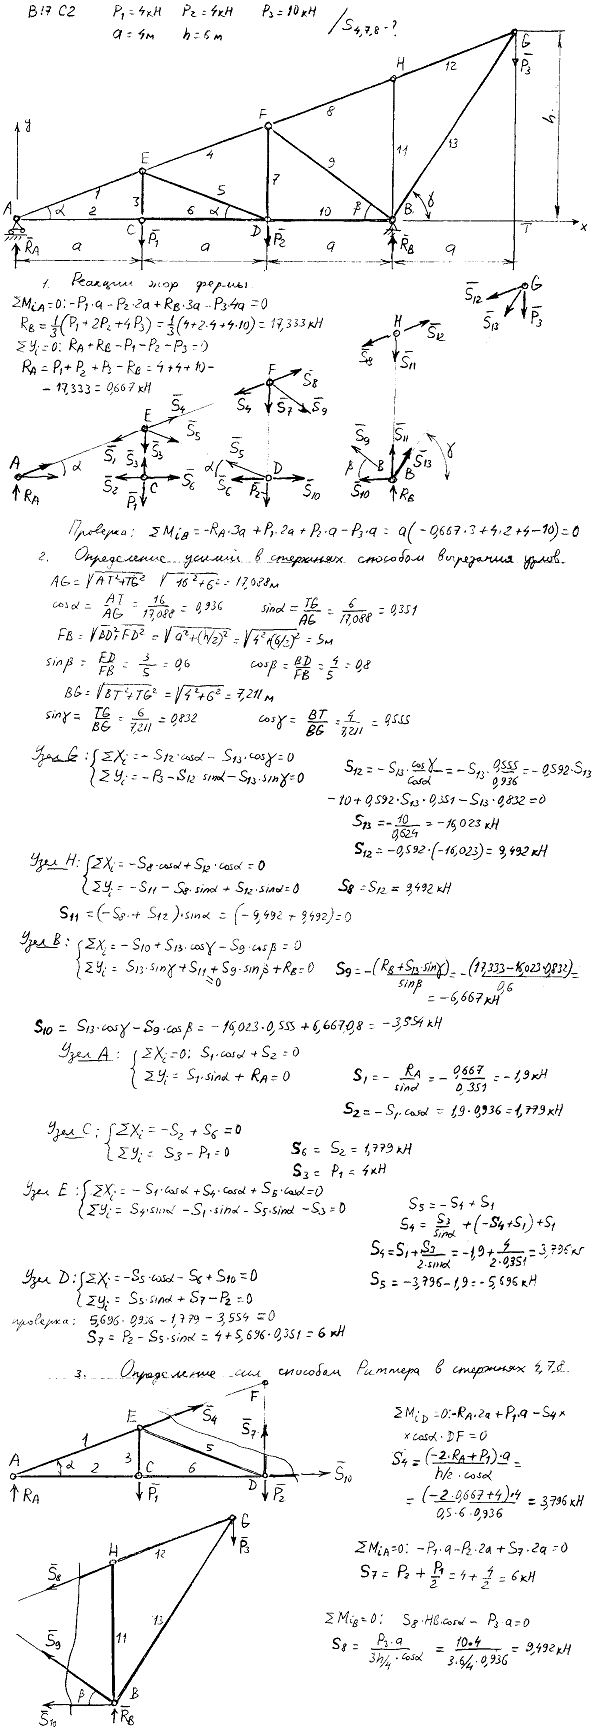 Задание C2 вариант 17. P1=4 кН, P2=4 кН, P3=10 кН, a=4 м, h=6 м, номер стержня 4, 7, 8.